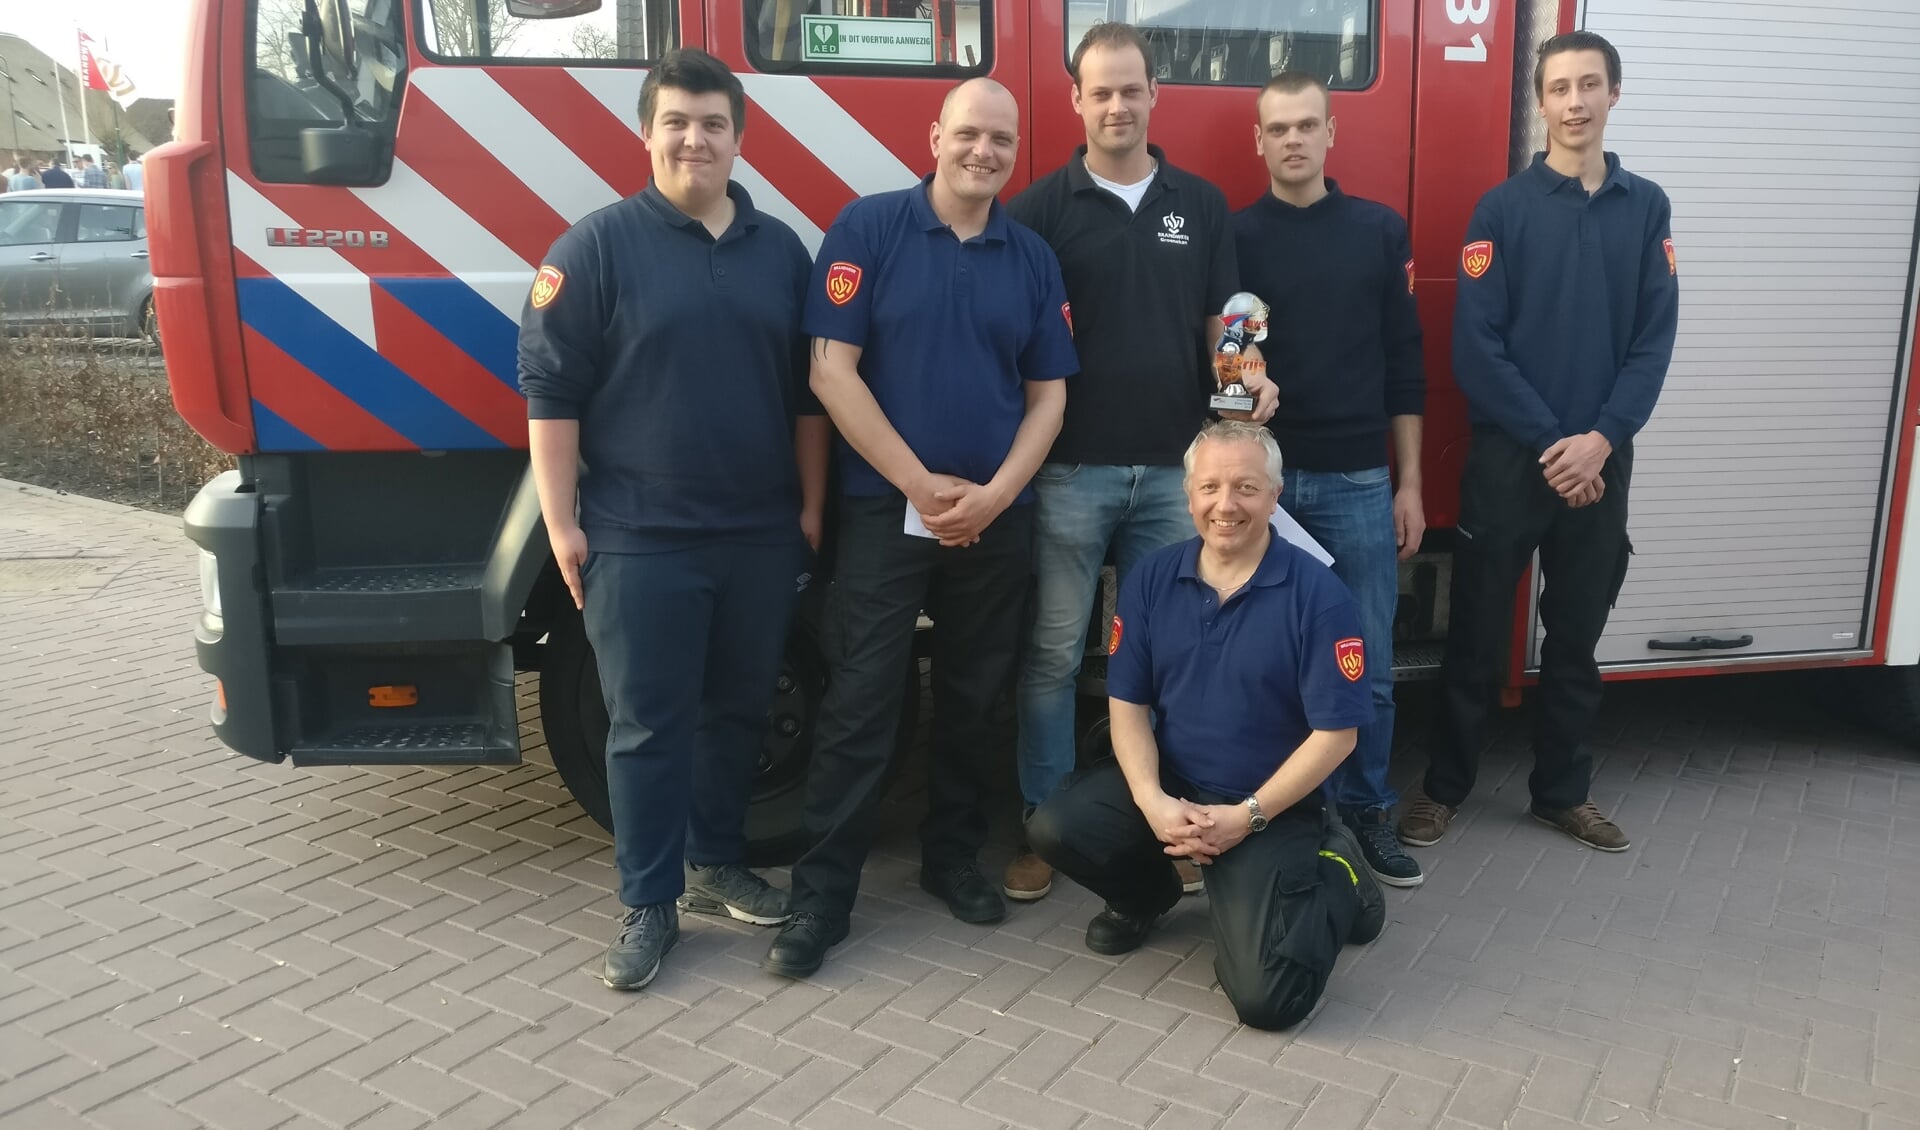  Het Groenekanse brandweerteam is trots op de prestatie in Benschop. (OV).